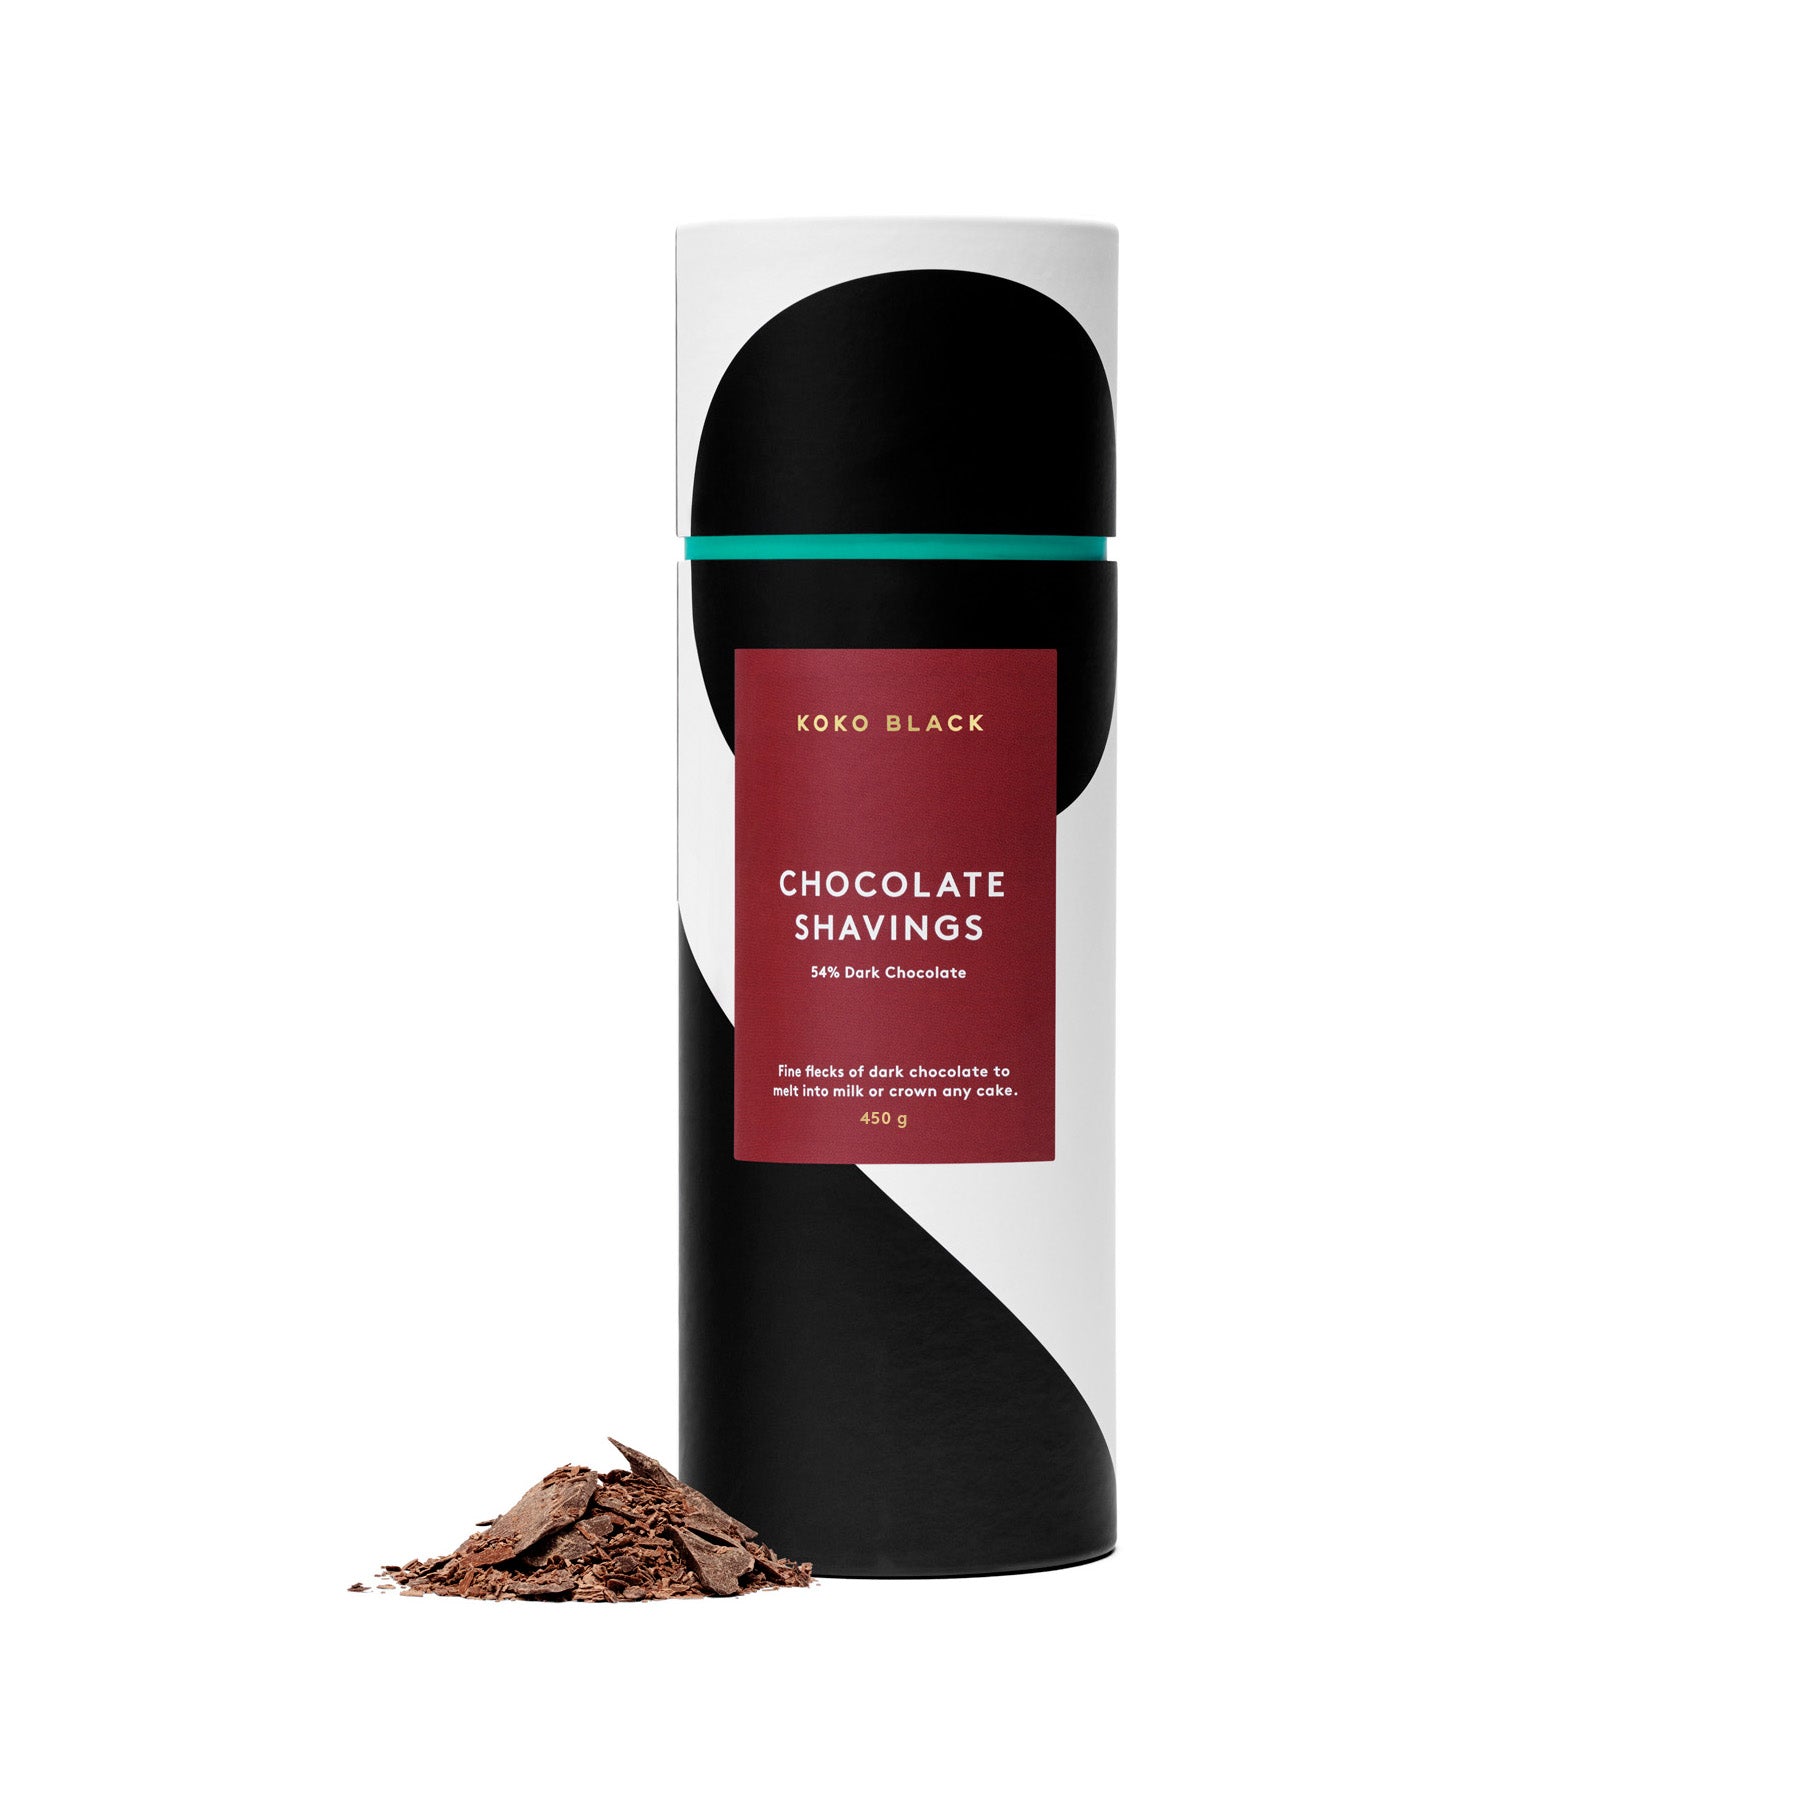 Shavings 450g | 54% Dark Chocolate